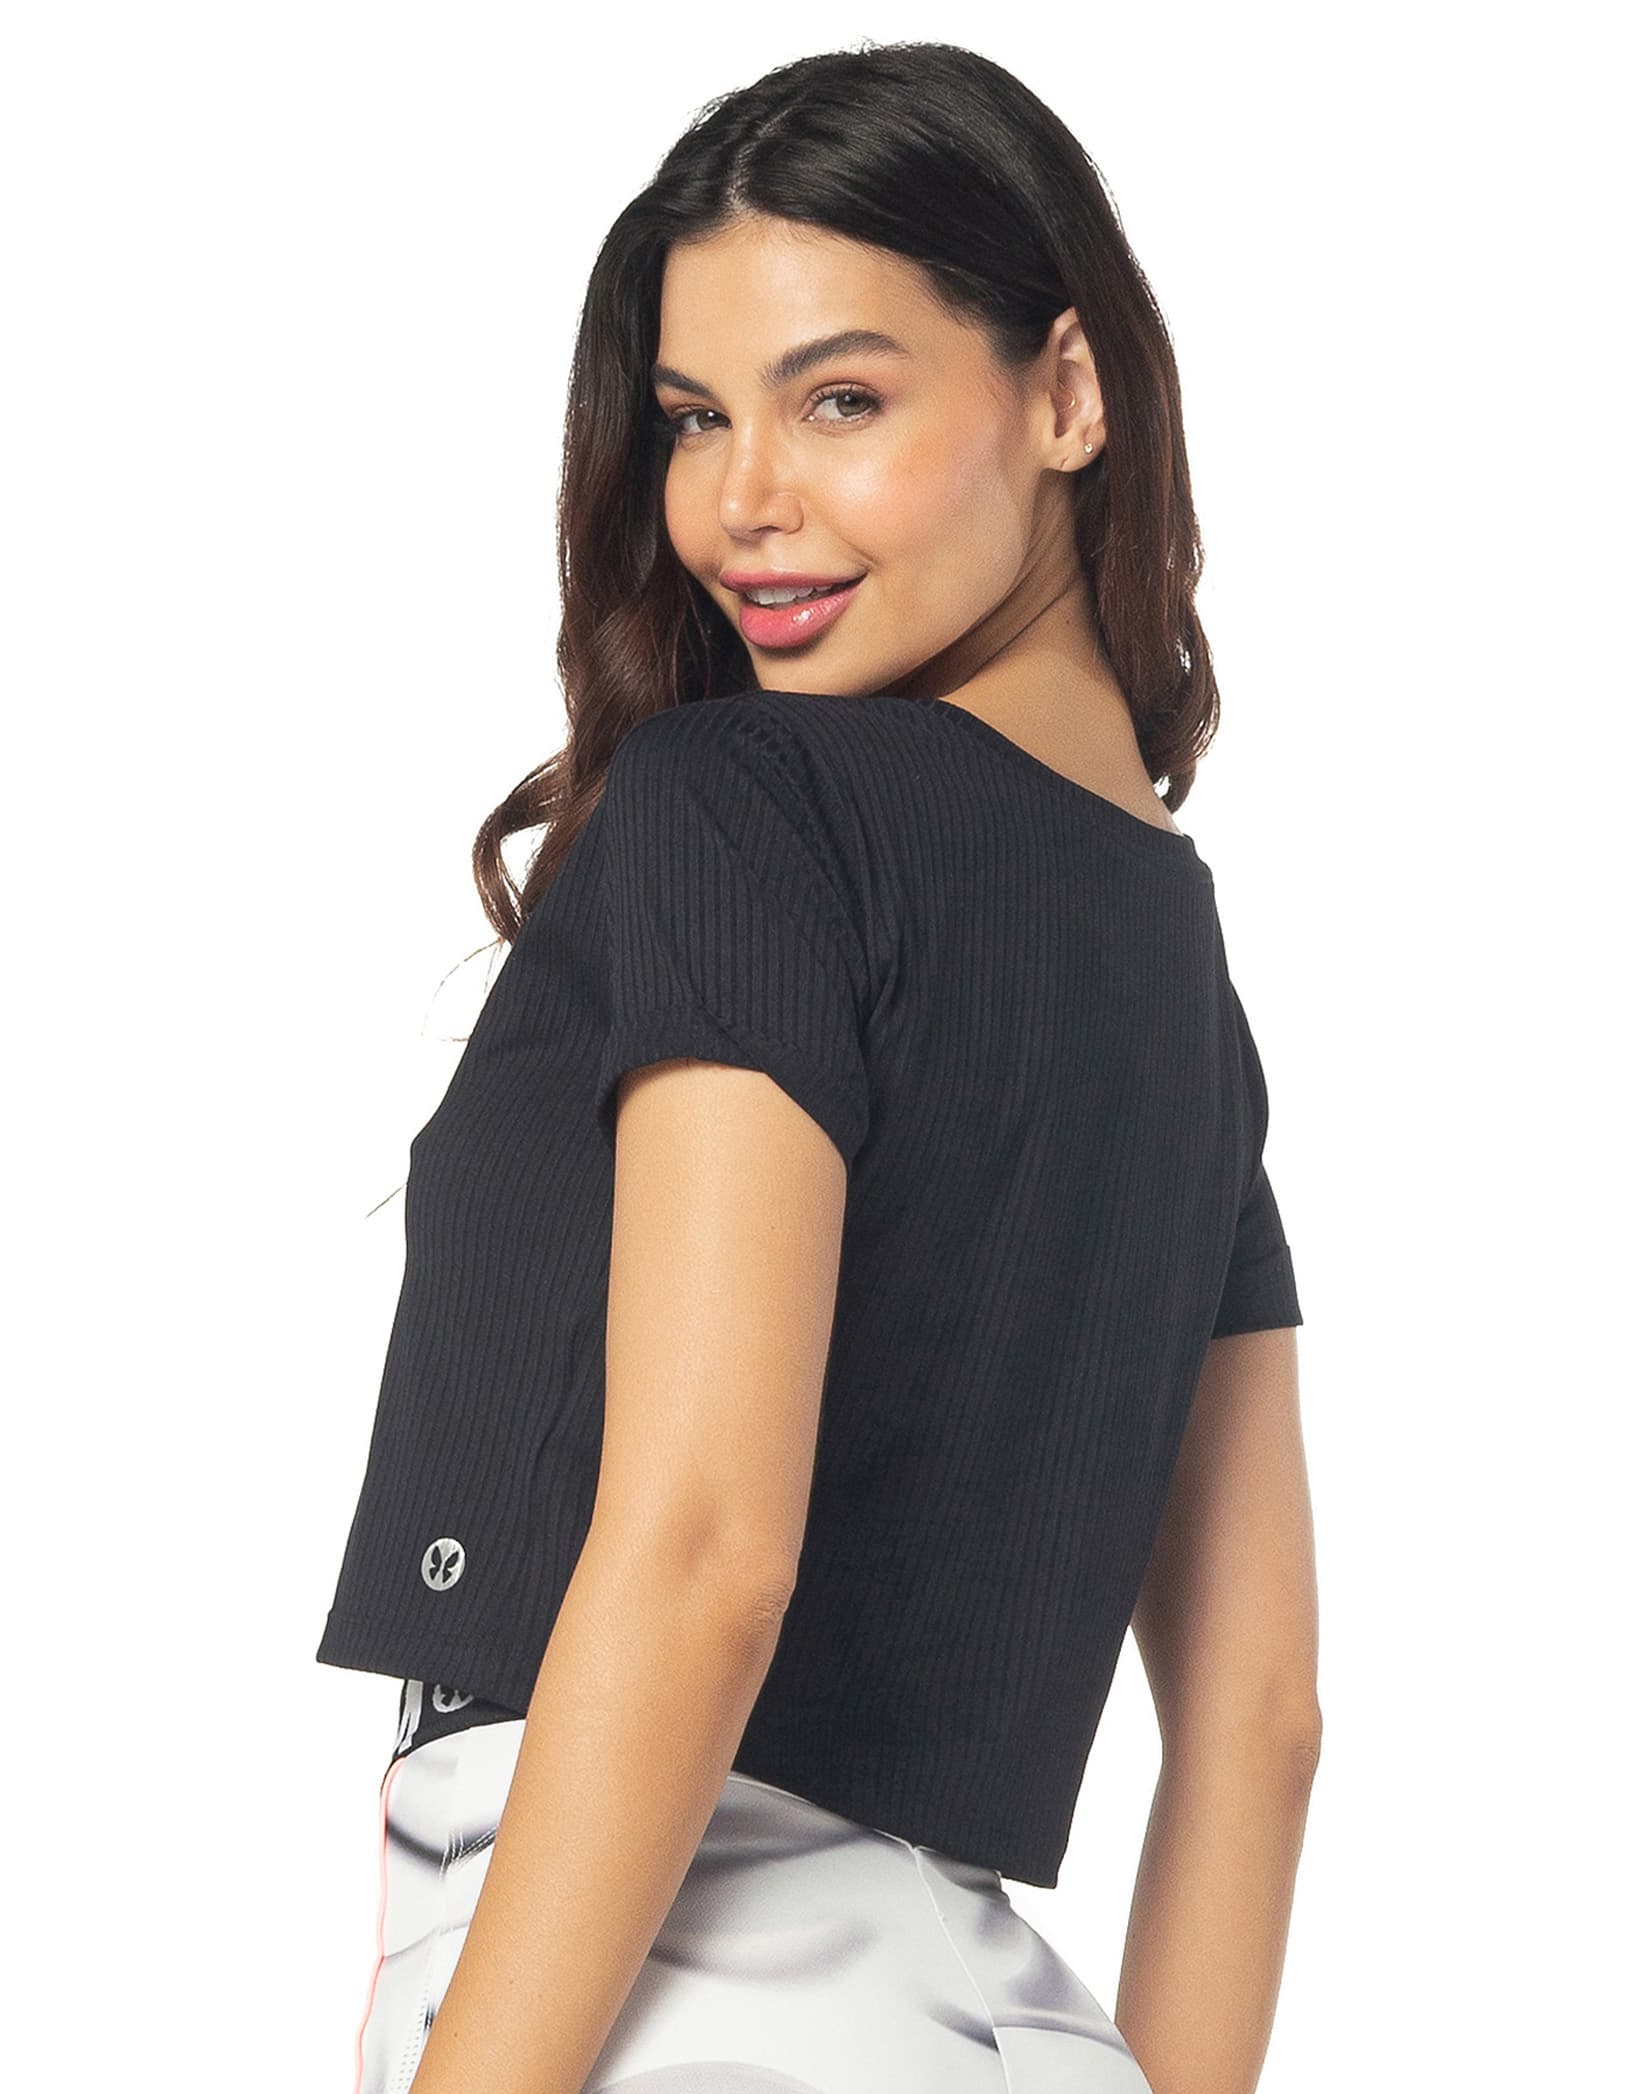 Vestem - Kaly Black Short Sleeve Shirt - BMC600.C0002